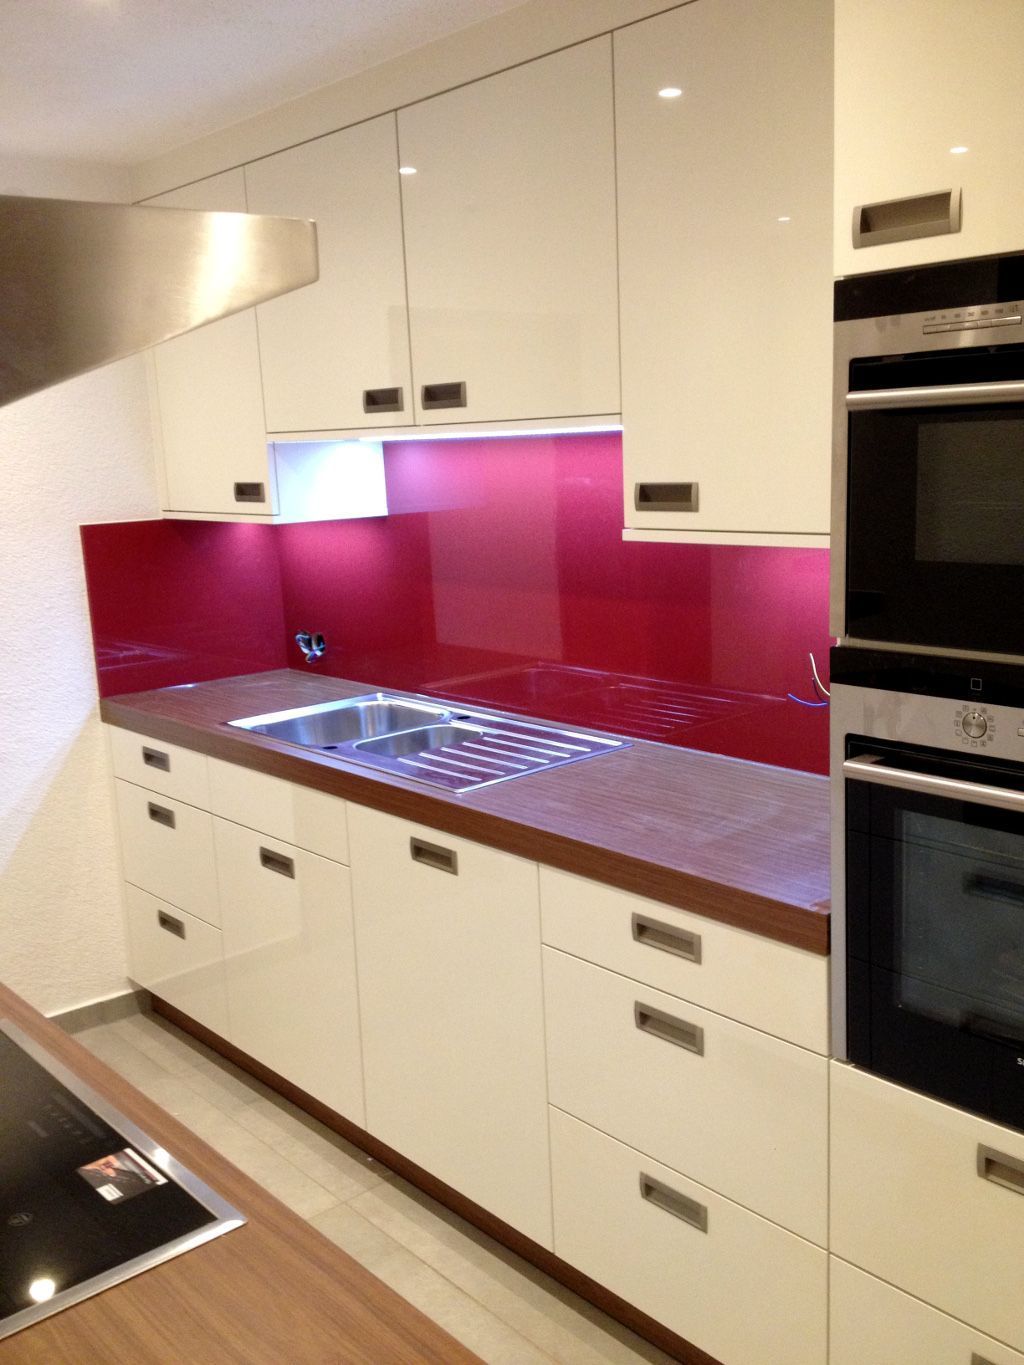 Küche in weiß und Nussbaum mit Spritzschutz in rot (Vöhringen)